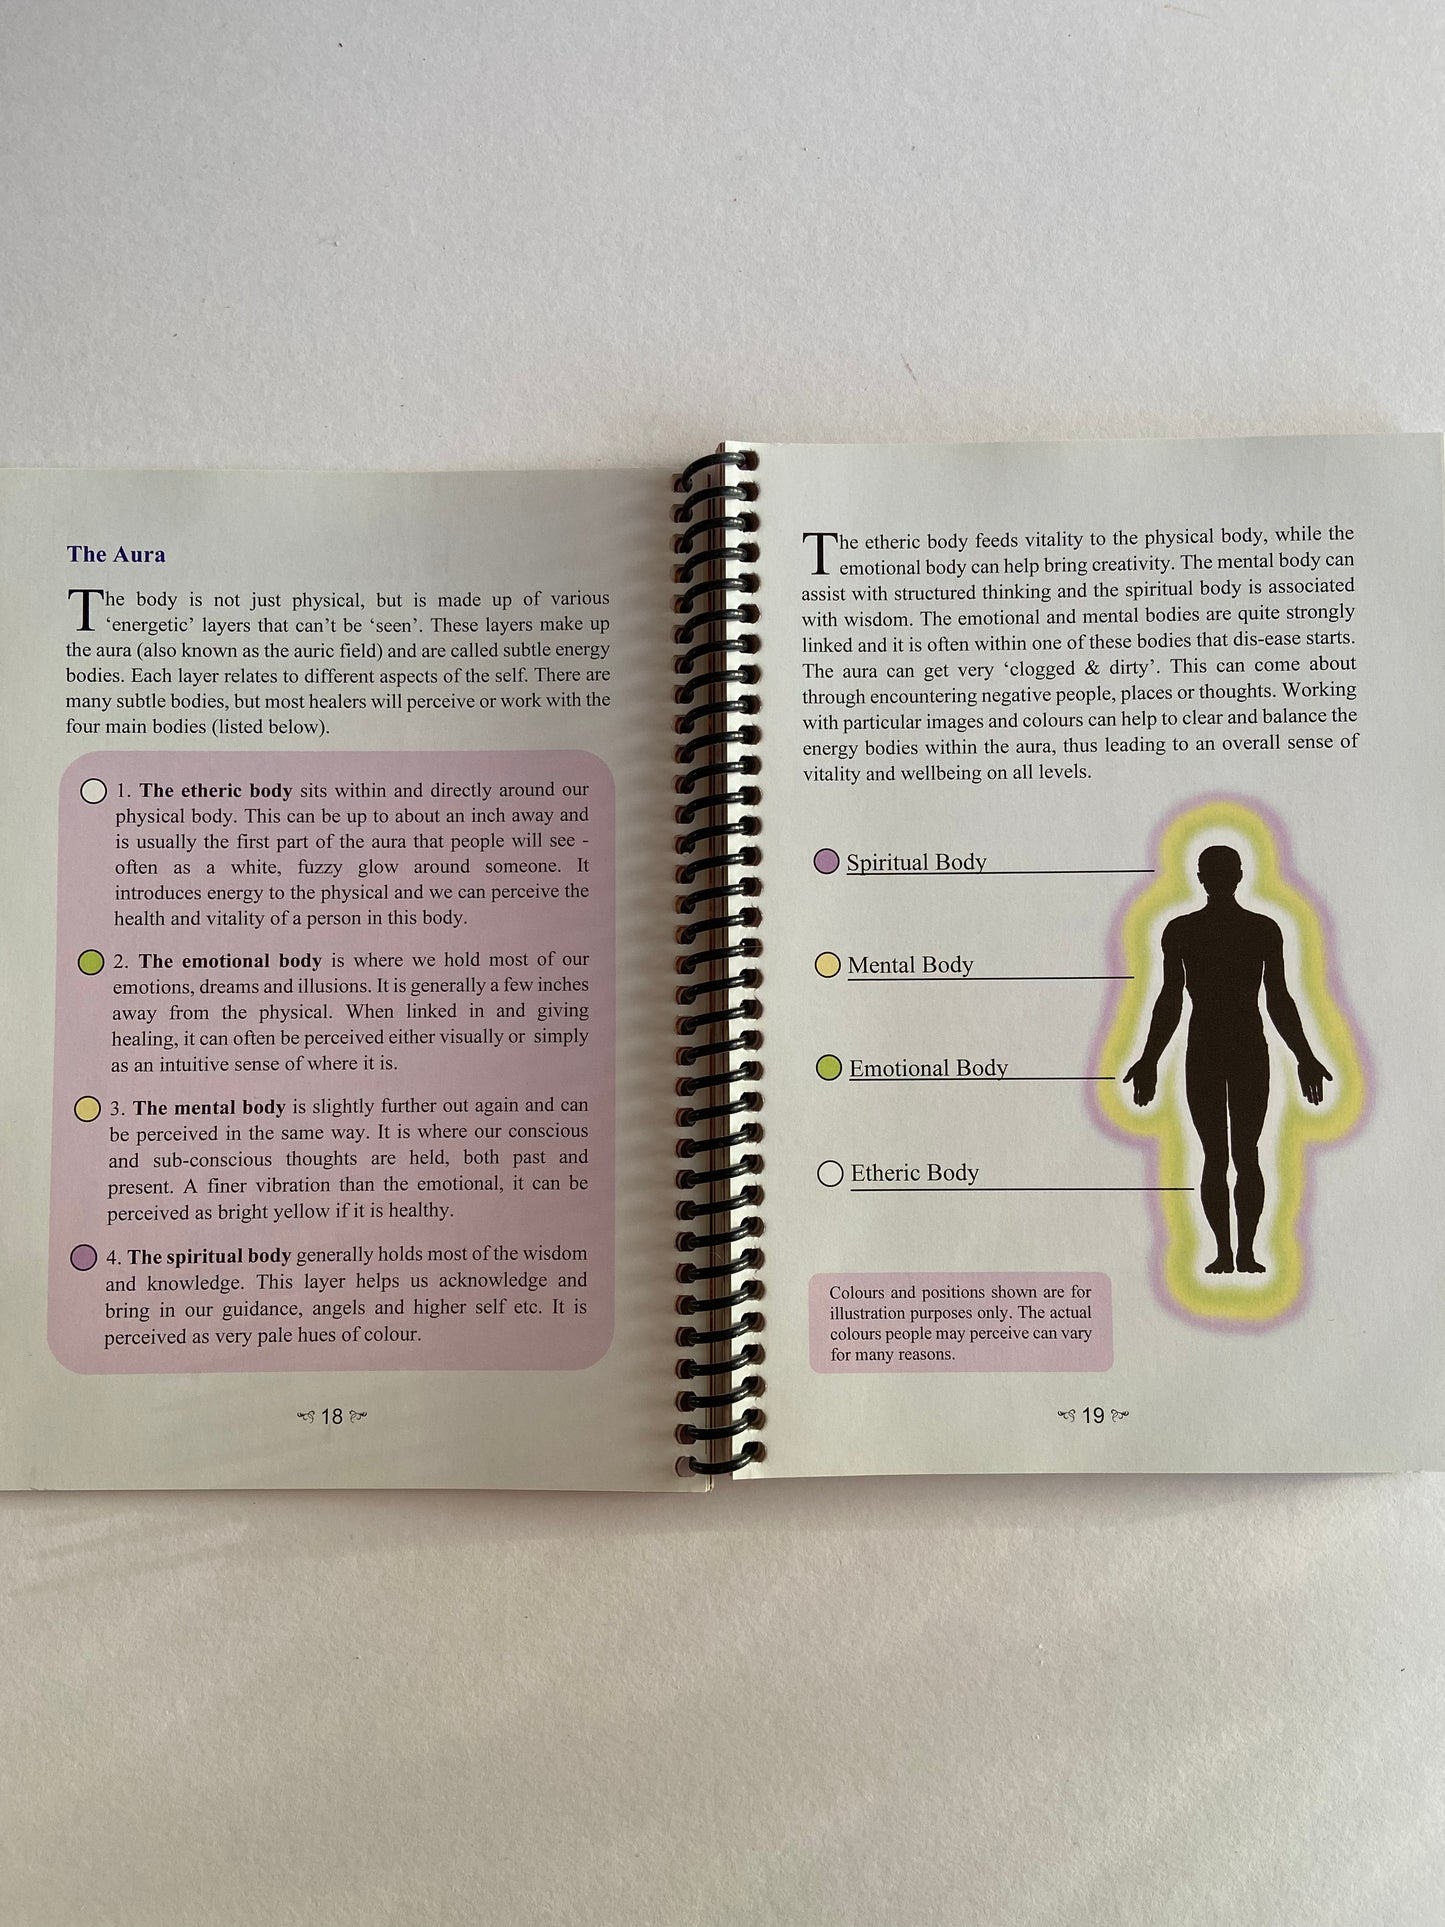 Crystal Skull message card meditations book